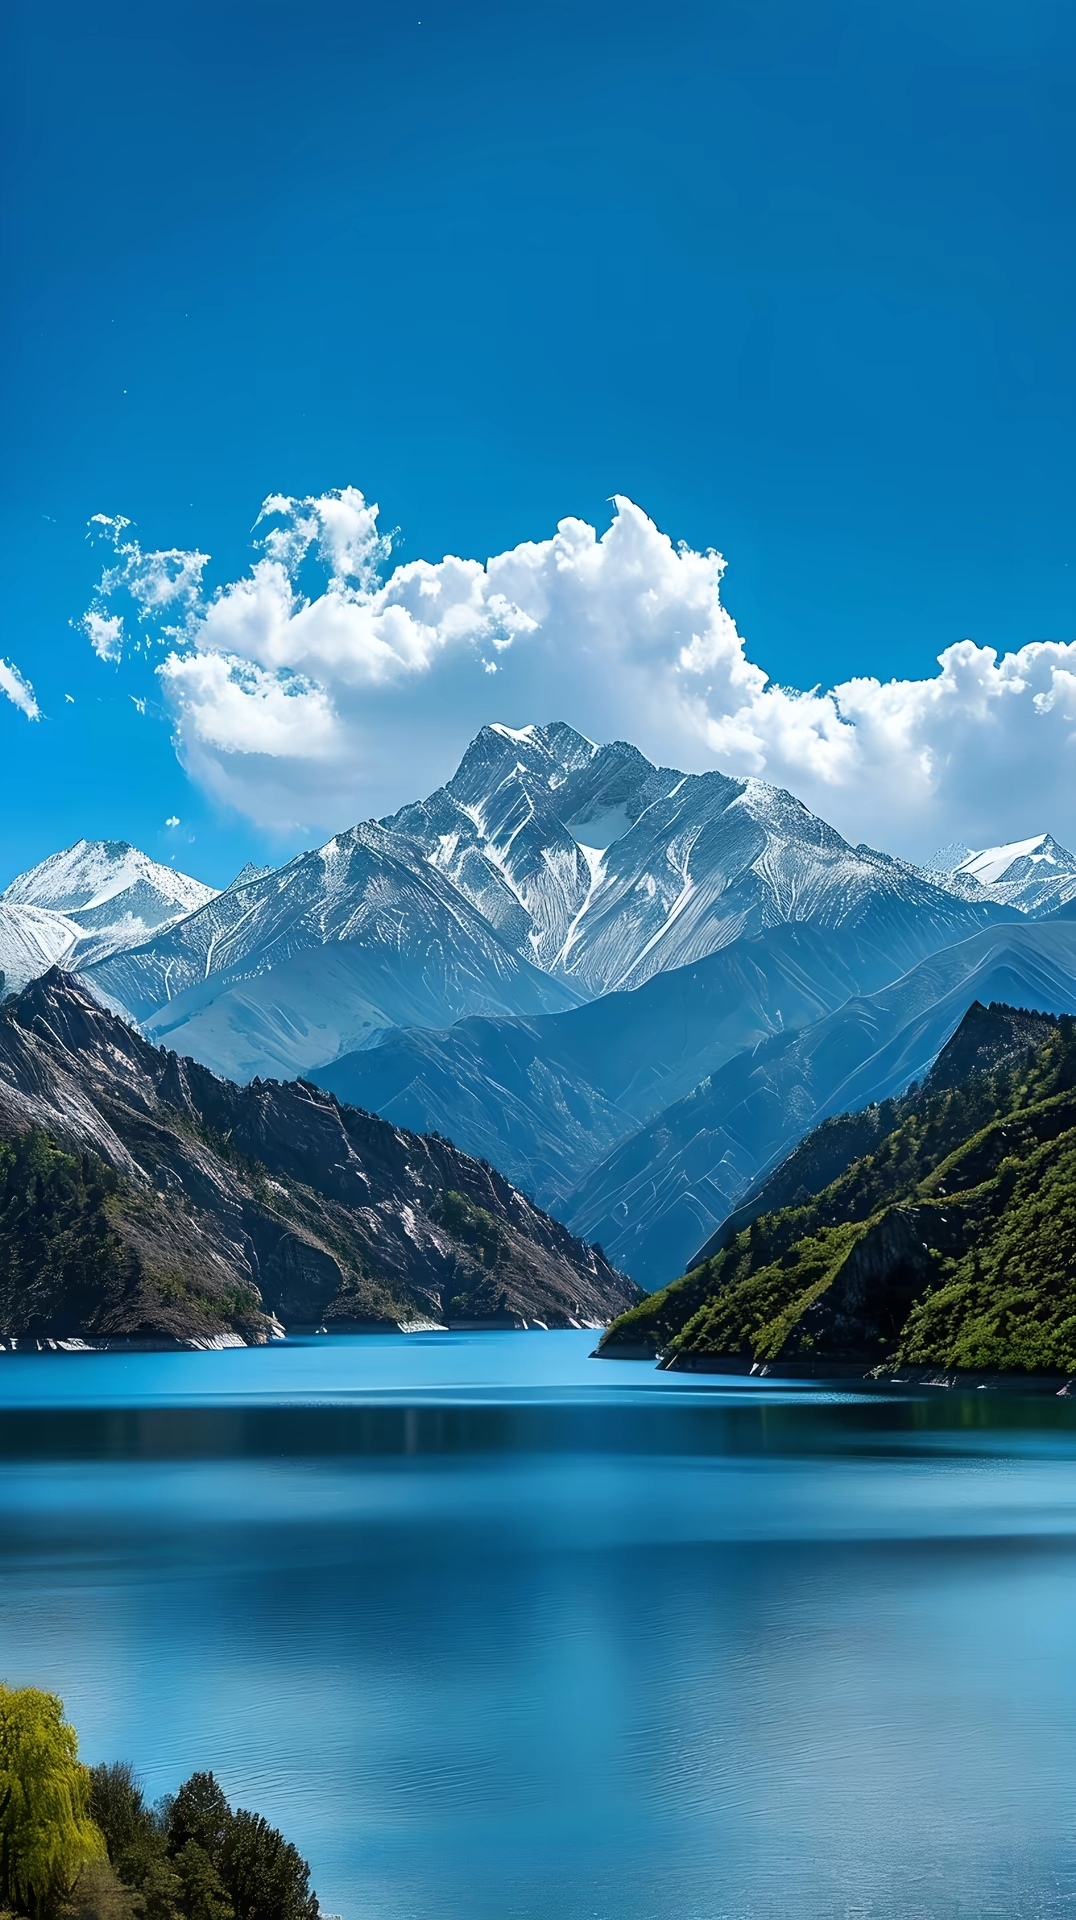 天山天池位于新疆省昌吉回族自治州呼图壁县和博尔塔拉蒙古自治州博乐市交界处，是一处以湖泊为主的自然风景